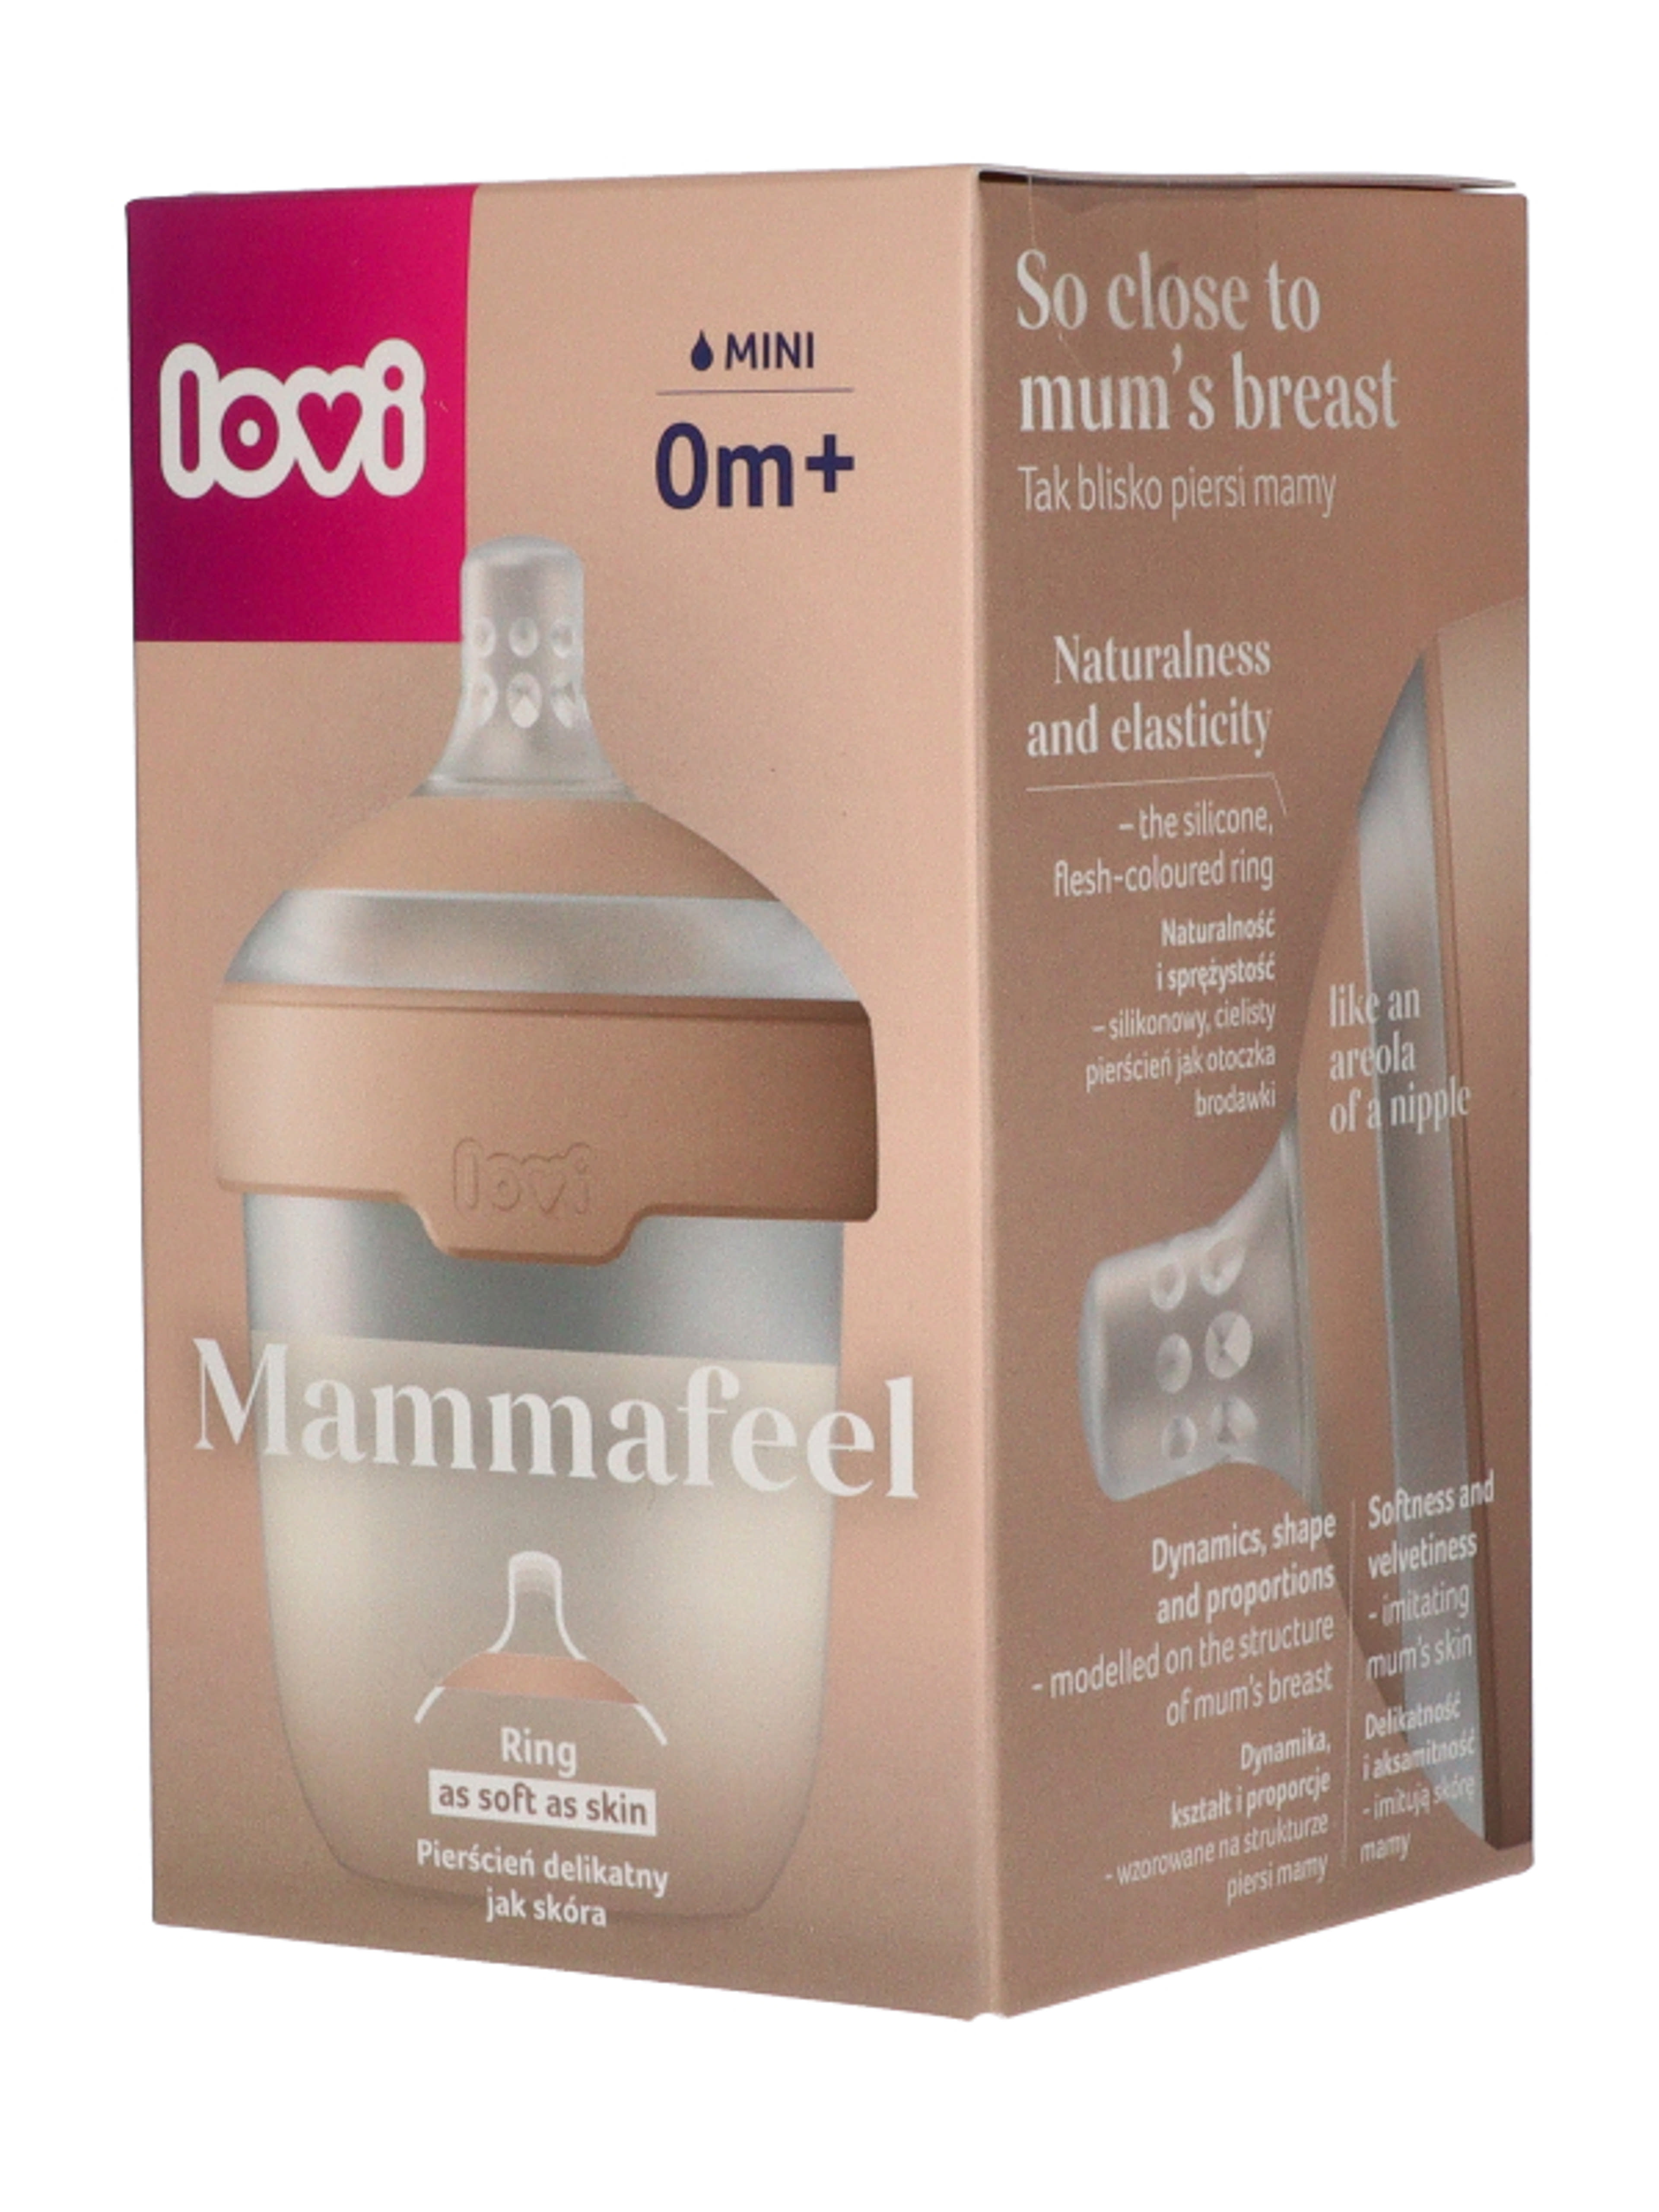 Lovi Mammafeel cumisüveg újszülött kortól 150 ml - 1 db-2